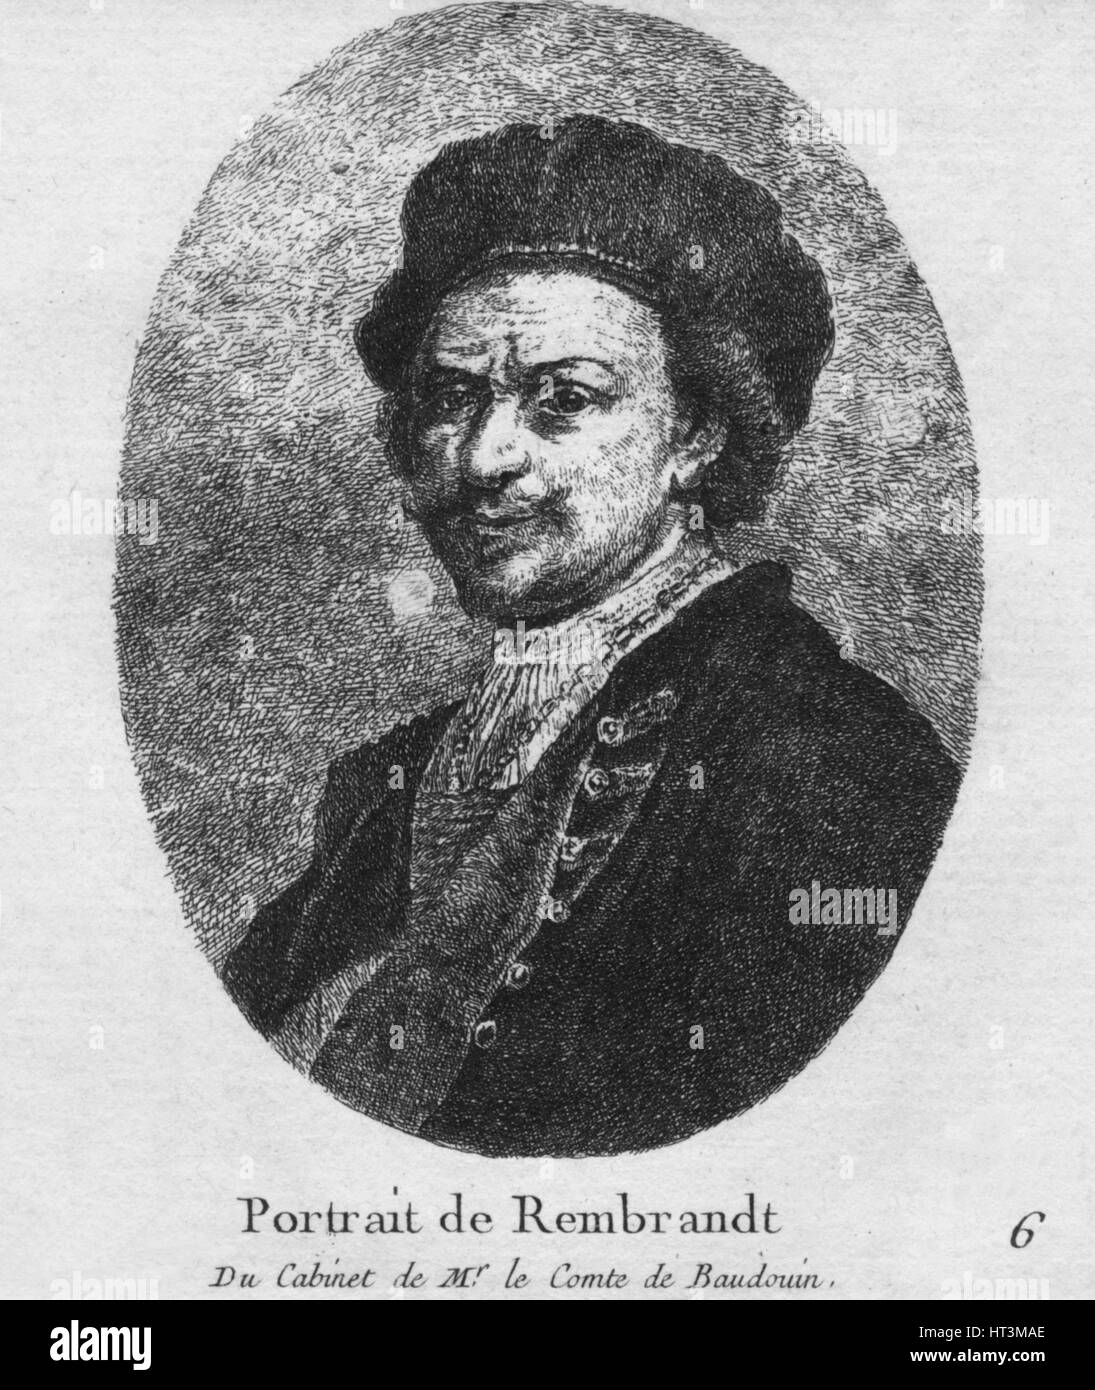 'Portrait de Rembrandt  - Du Cabinet de Mr. le Comte de Baudouin', c1770. Artist: Christian Gottfried Schulze. Stock Photo